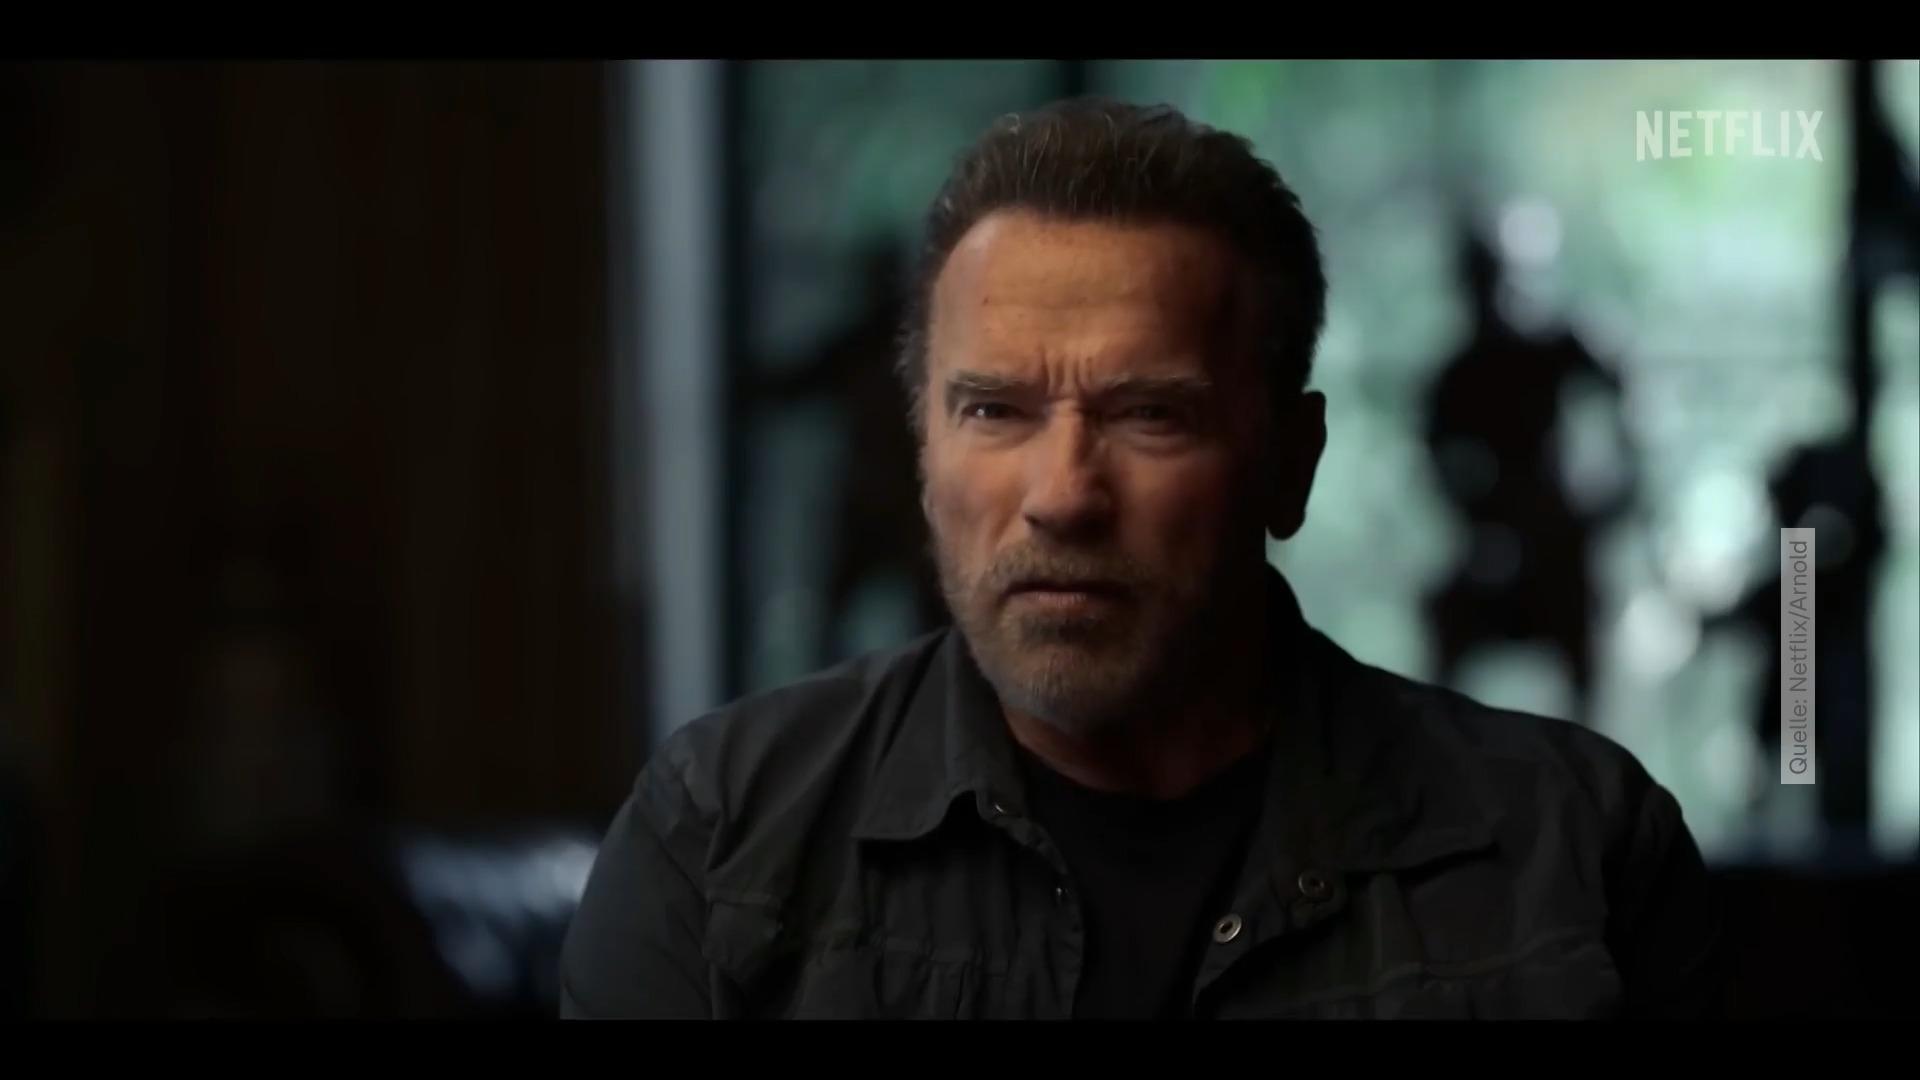 "Ik heb mijn familie verdriet gedaan" Arnold Schwarzenegger opent als nooit tevoren!